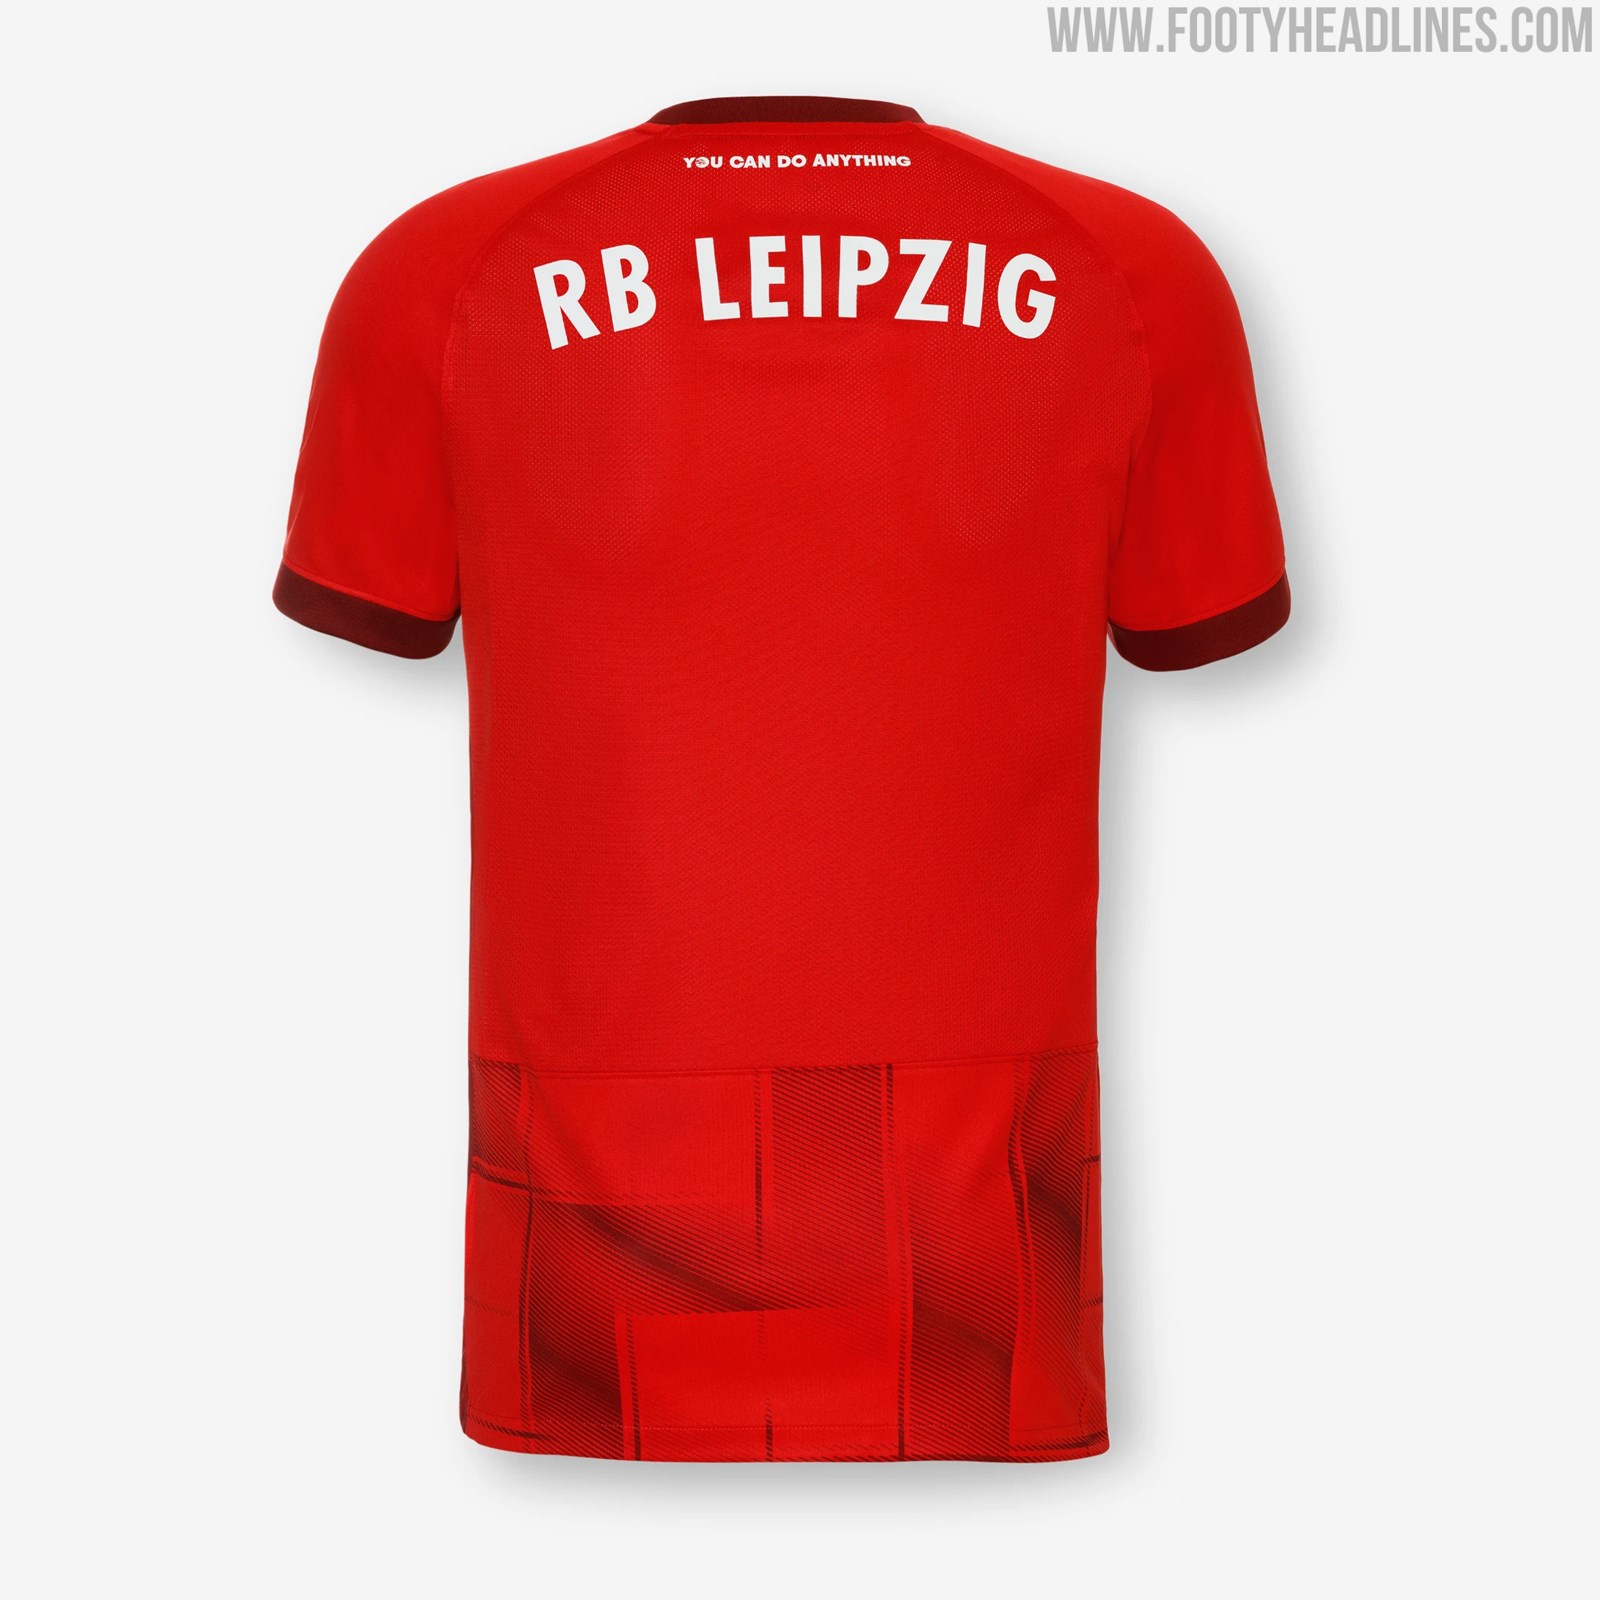 RB Leipzig 23-24 Third Kit Released - Footy Headlines